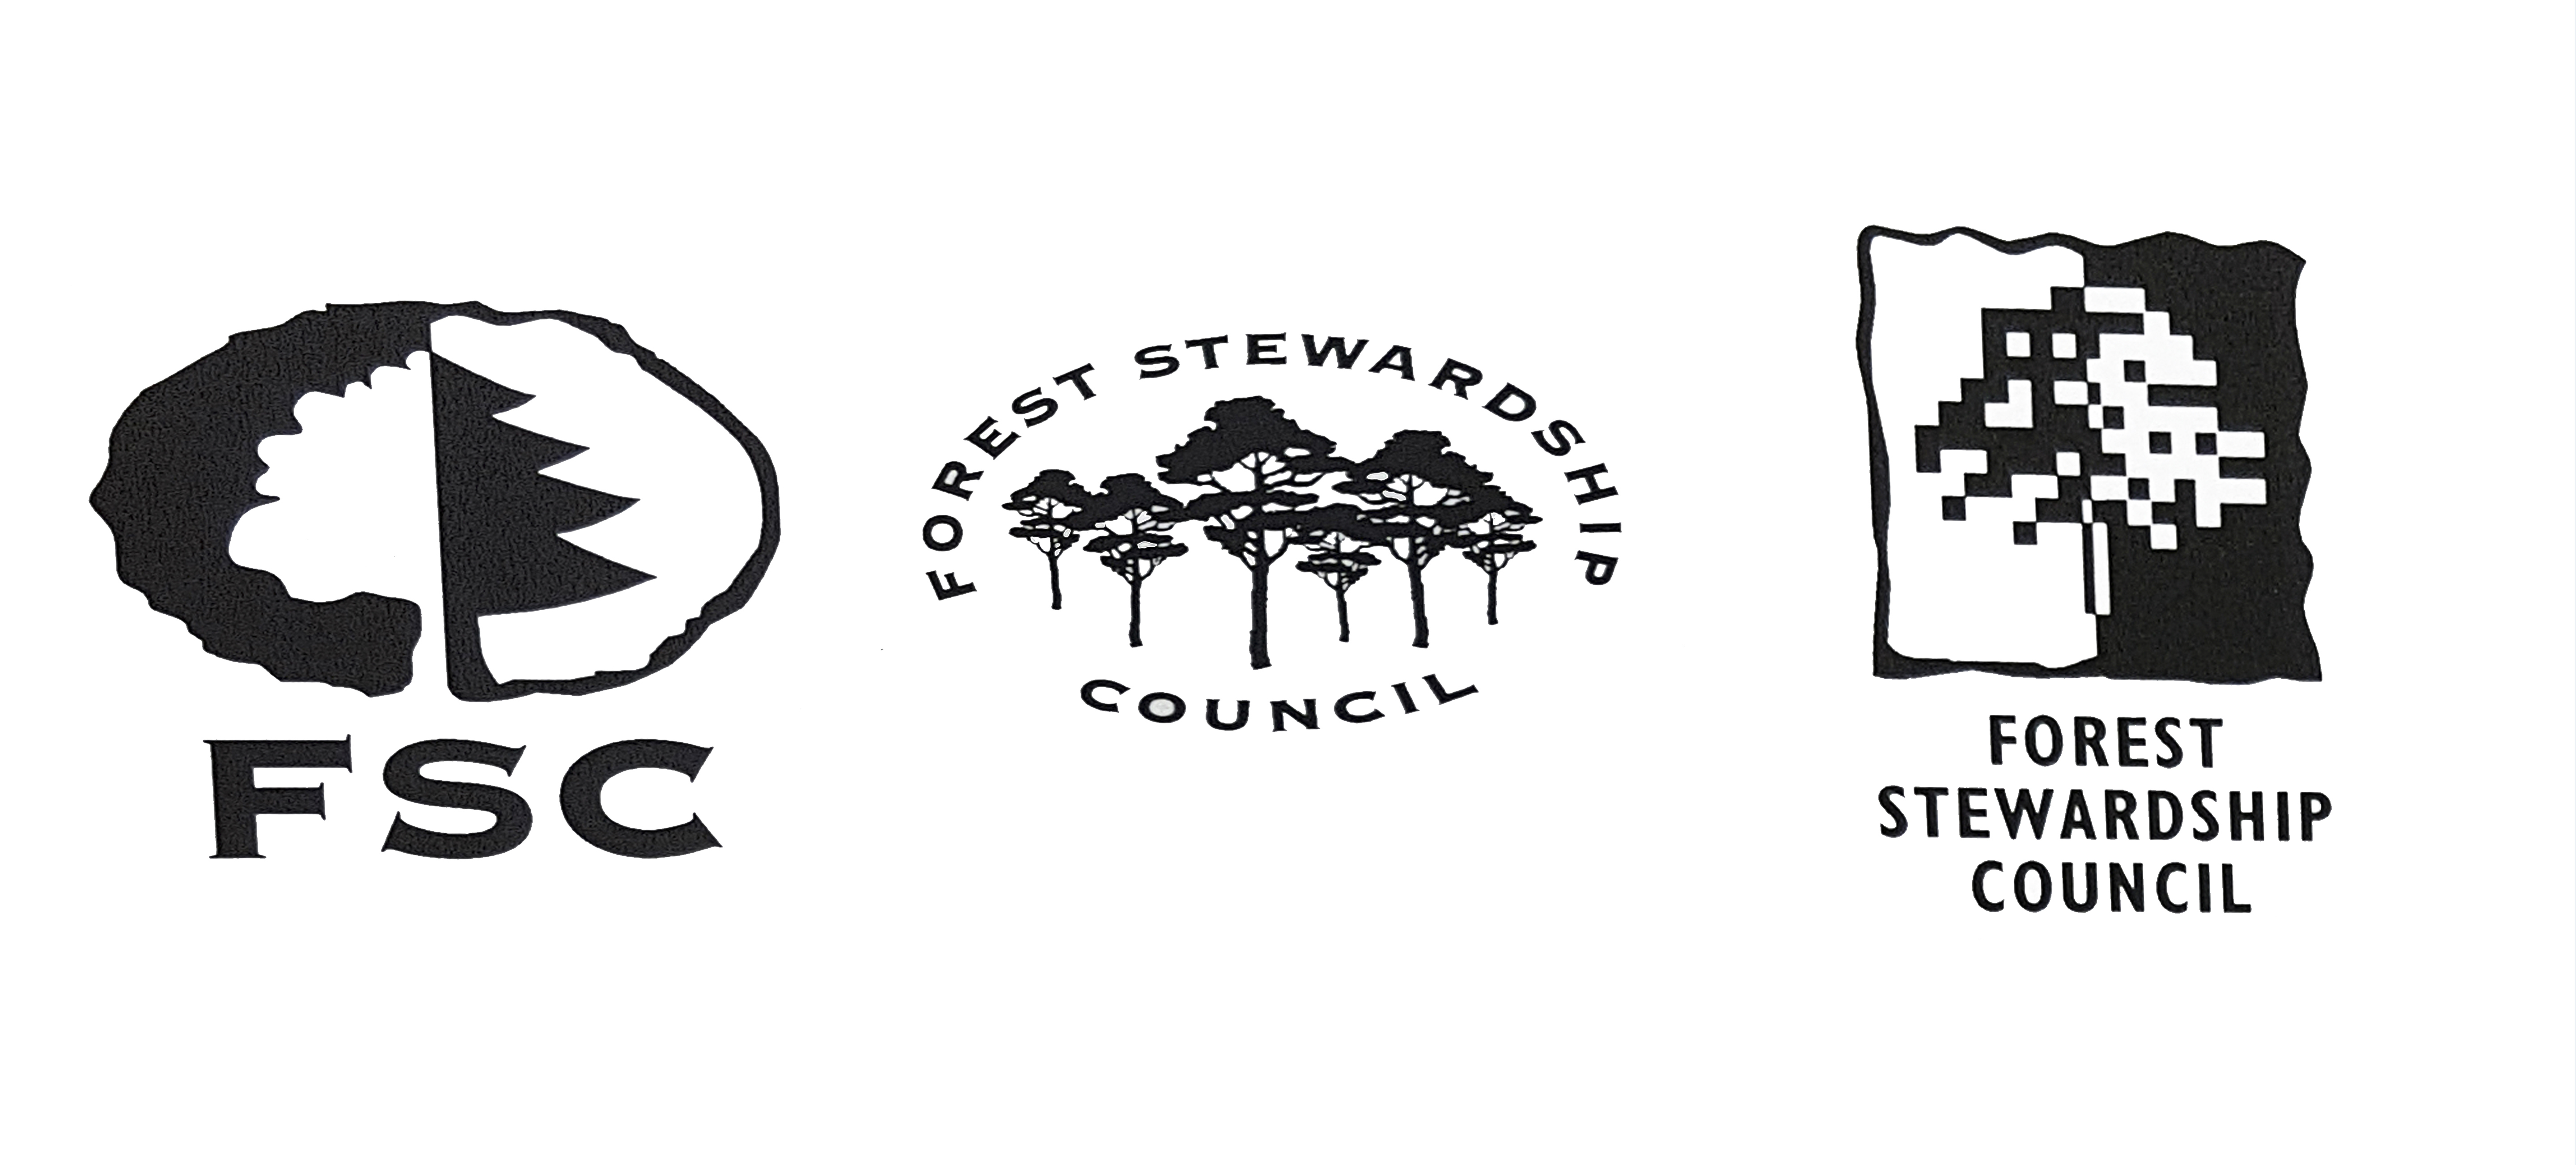 FSC logo proposals by designer Tristram Branscombe-Kent